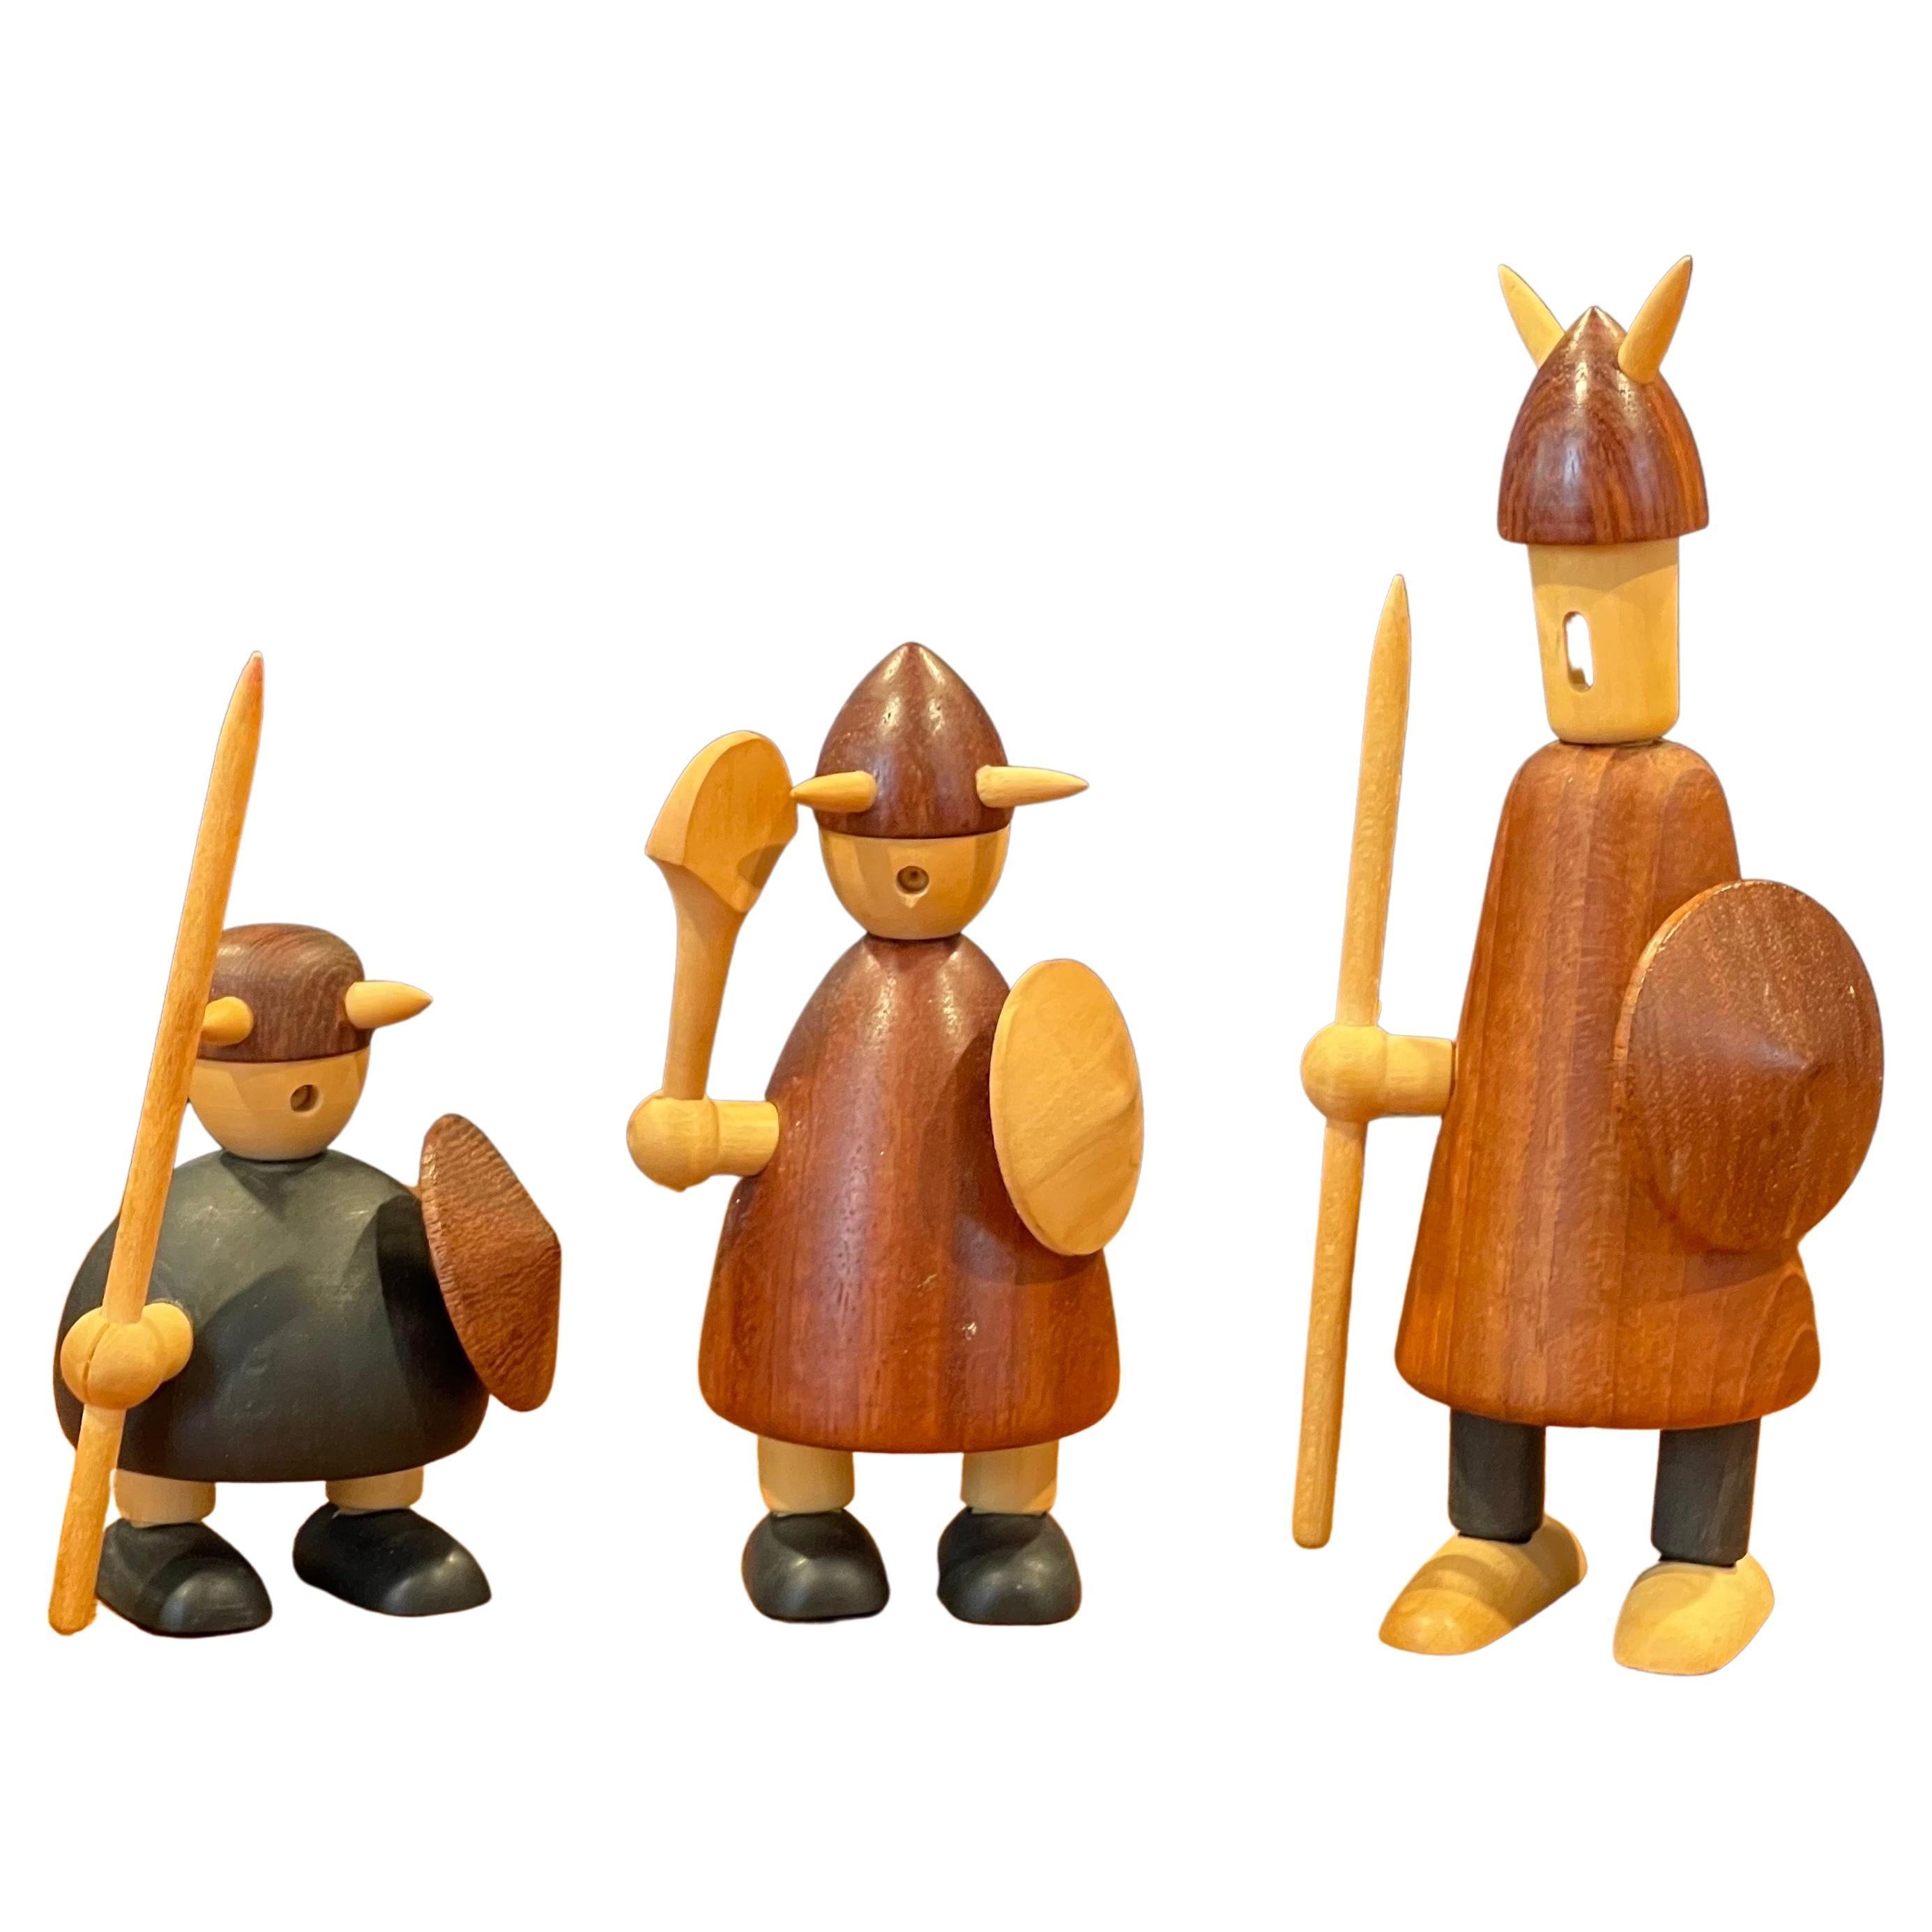 Ensemble de trois figurines de vikings danois du milieu du siècle dernier en bois mixte avec boîte d'origine par Jacob Jensen, vers les années 1950. Les figurines sont en excellent état vintage et mesurent : 5,5